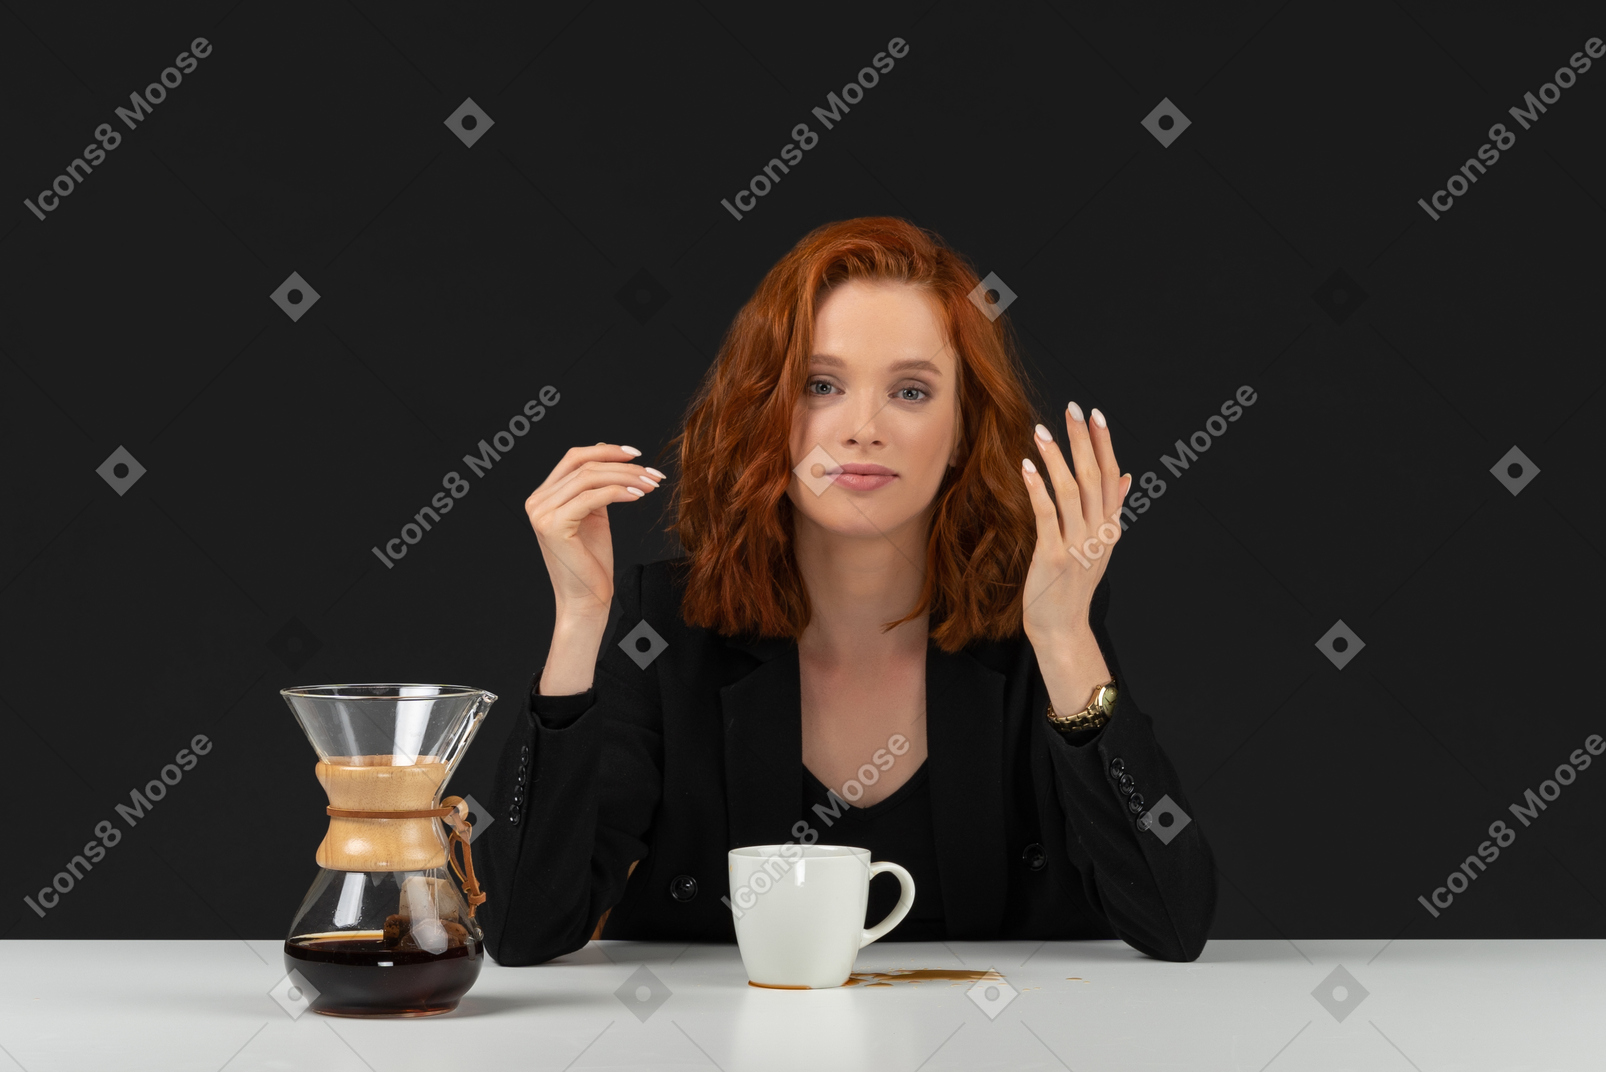 Cute woman having a coffee break